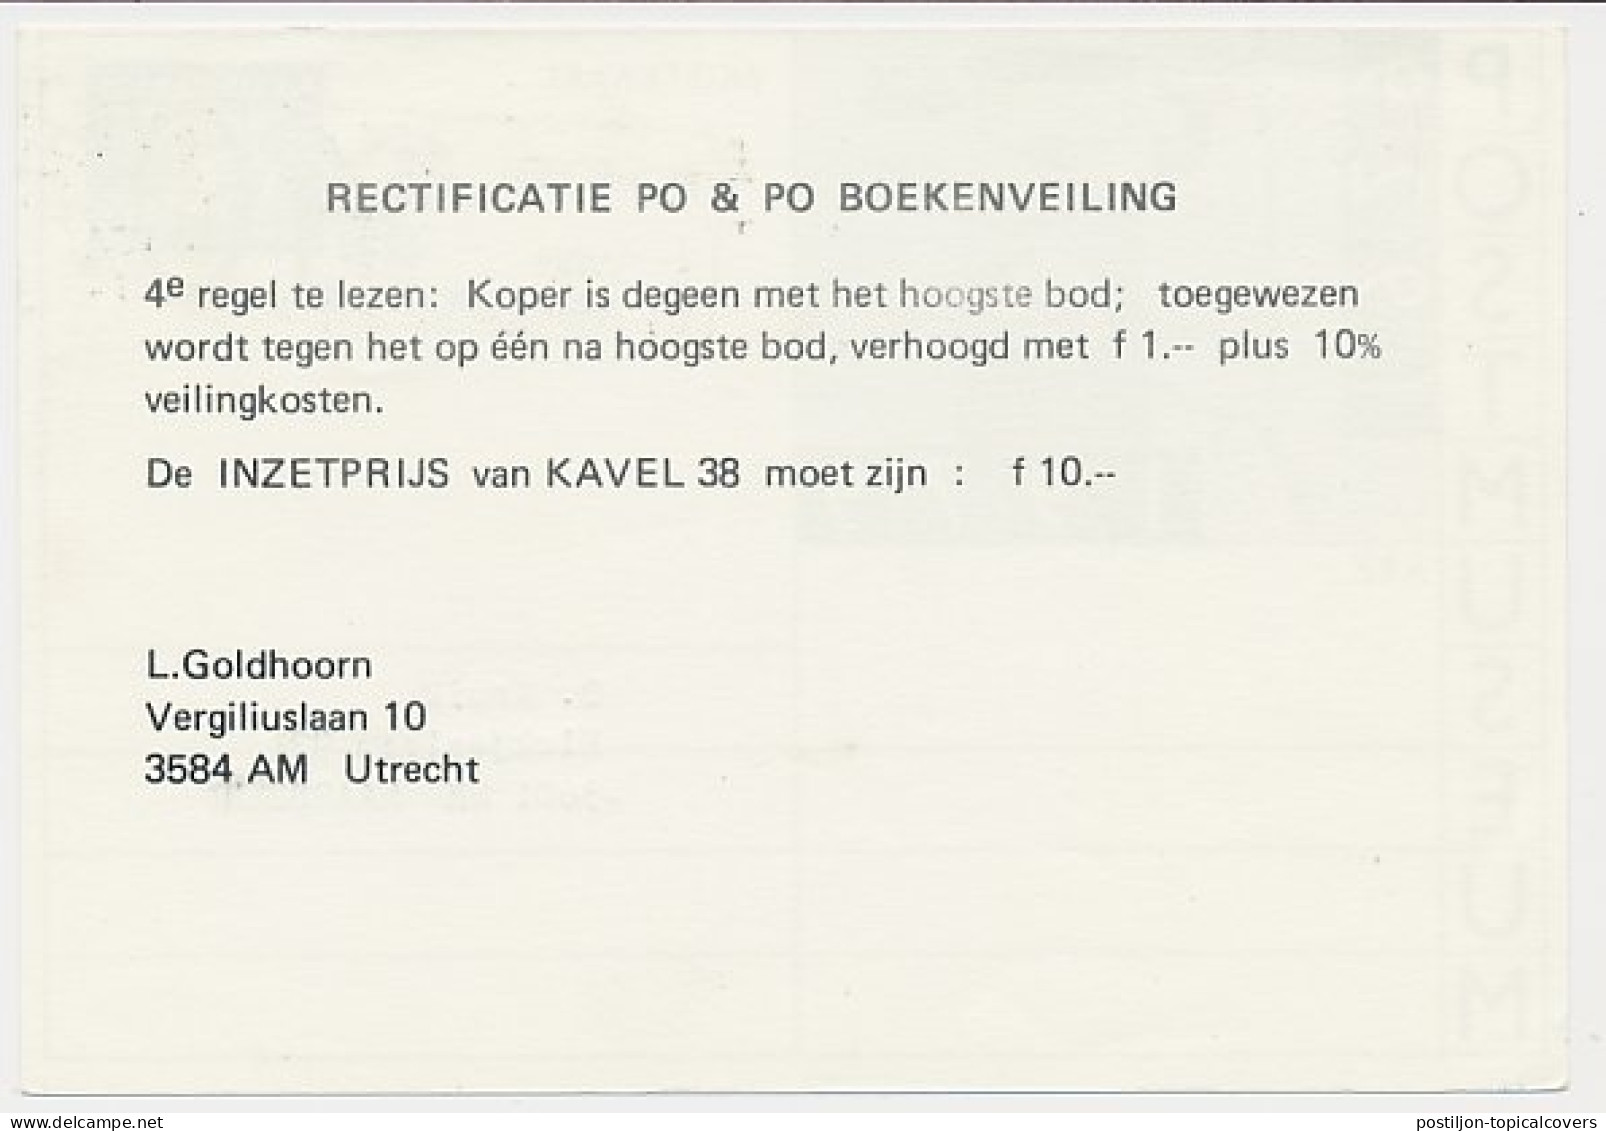 Briefkaart G. 357 Particulier Bedrukt Utrecht 1979 - Postwaardestukken